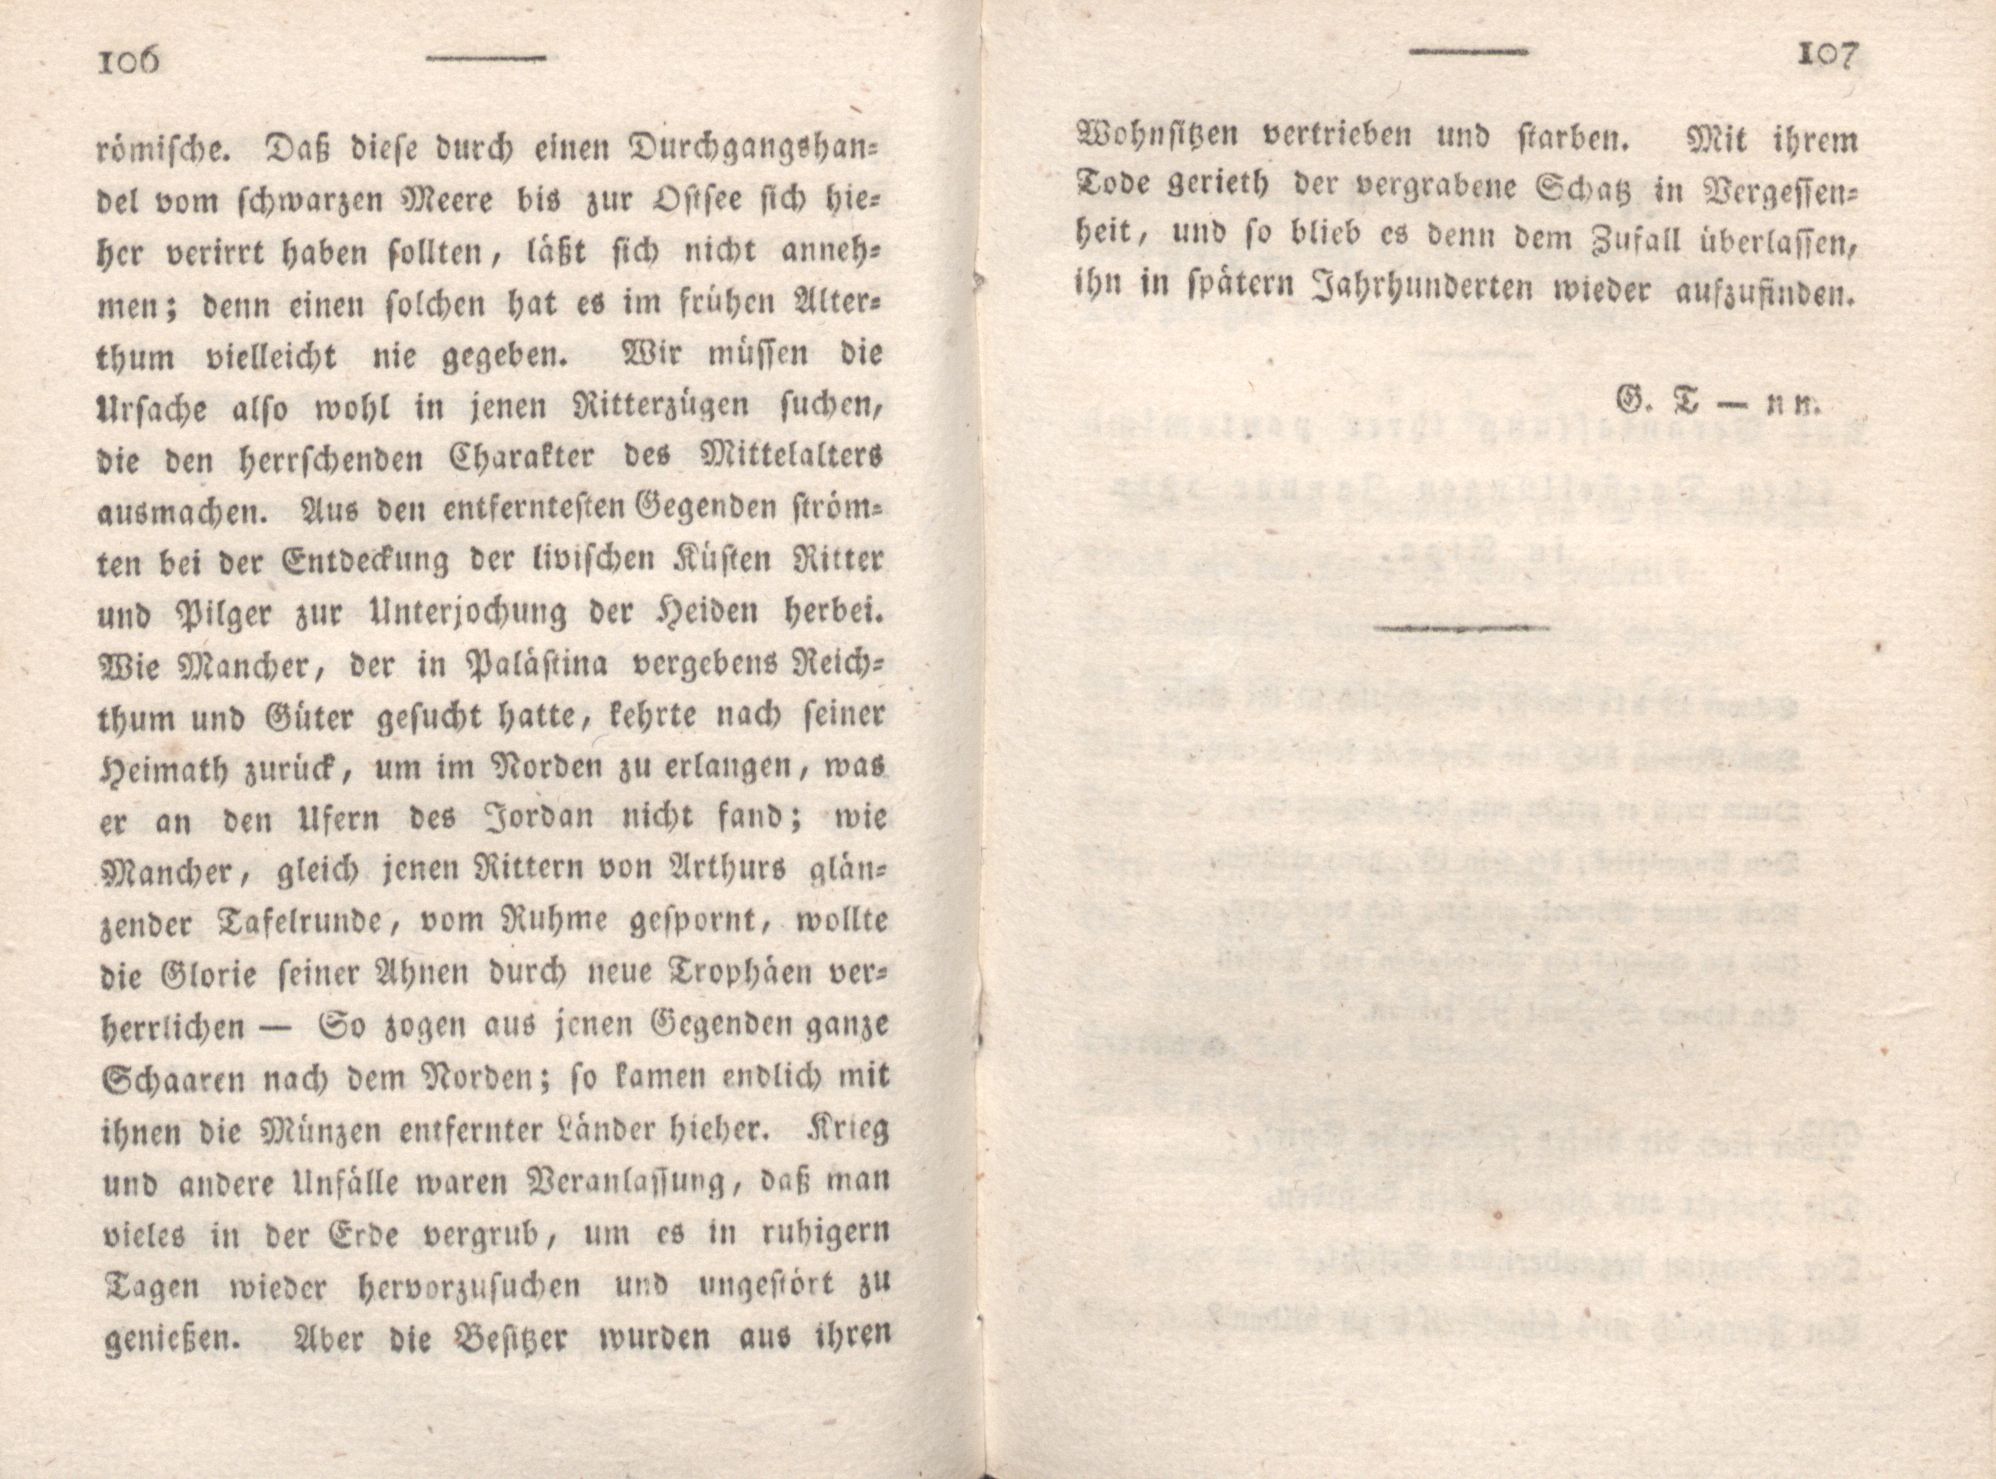 Livona [2] (1815) | 72. (106-107) Main body of text